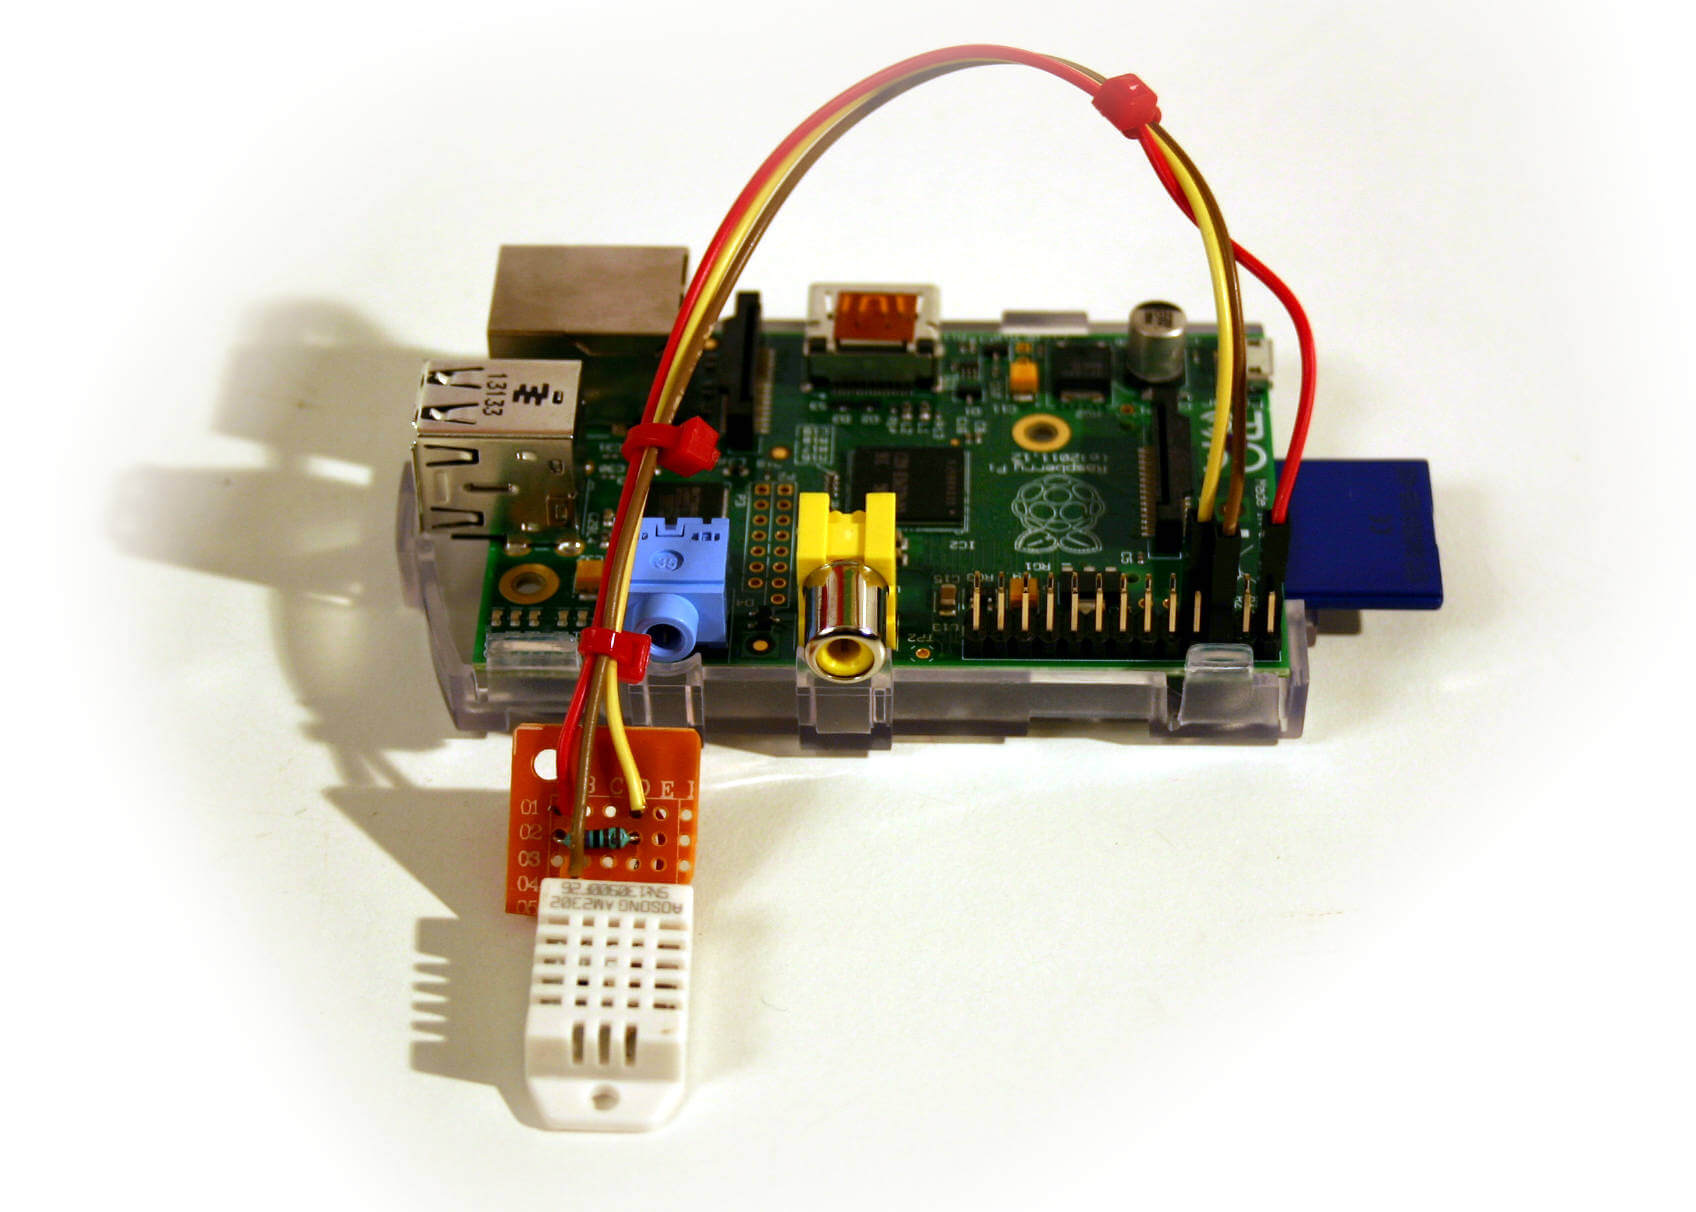 Temperatursensor DS1820 am Raspberry Pi mit Python auslesen 